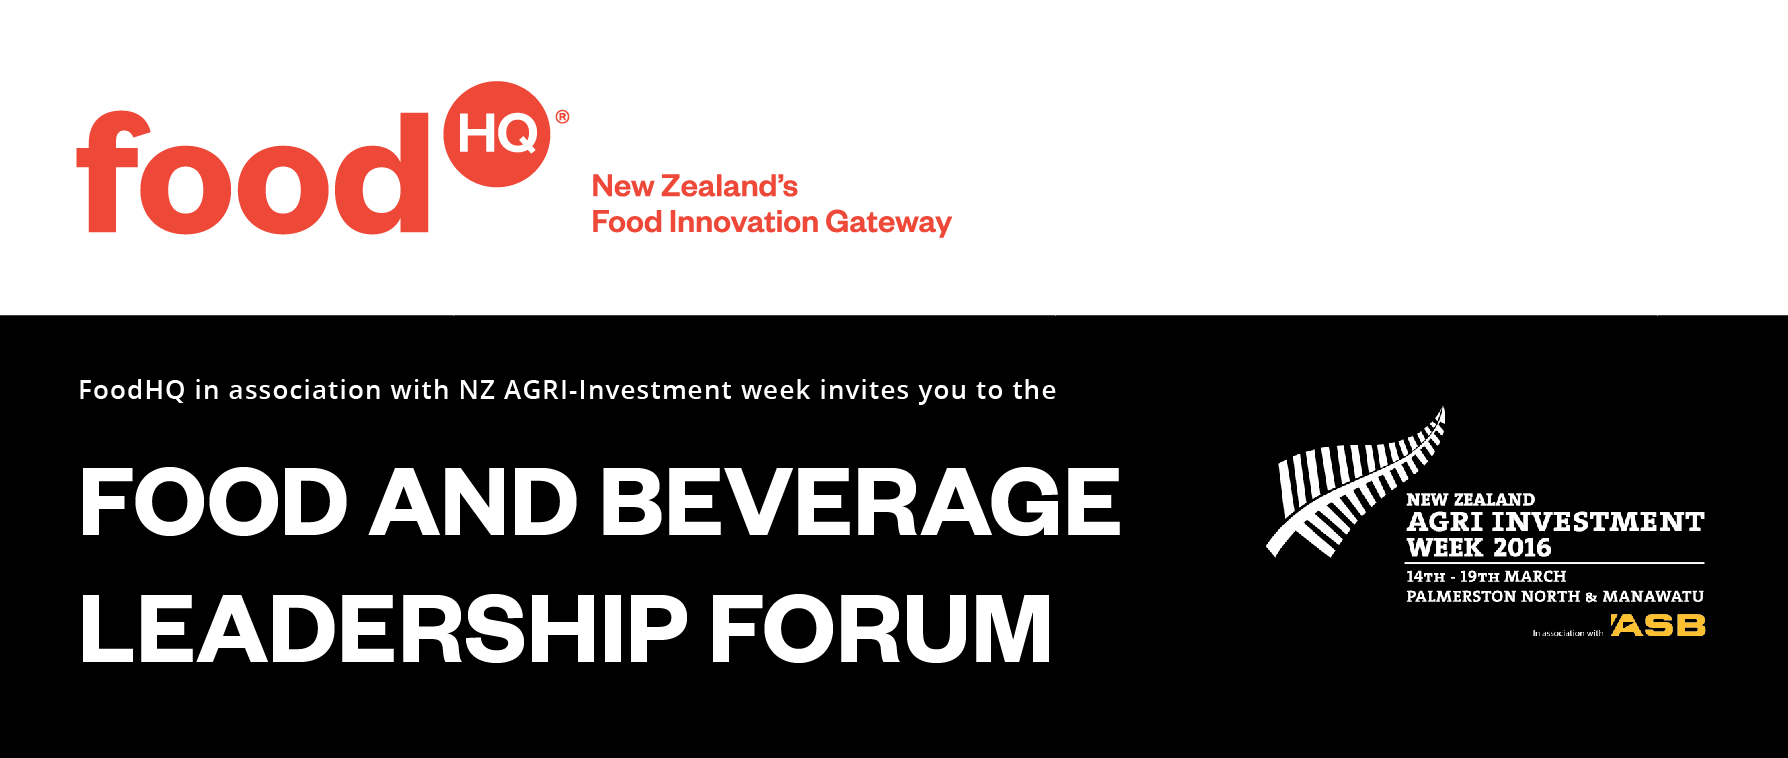 Food and Beverage Leadership Forum